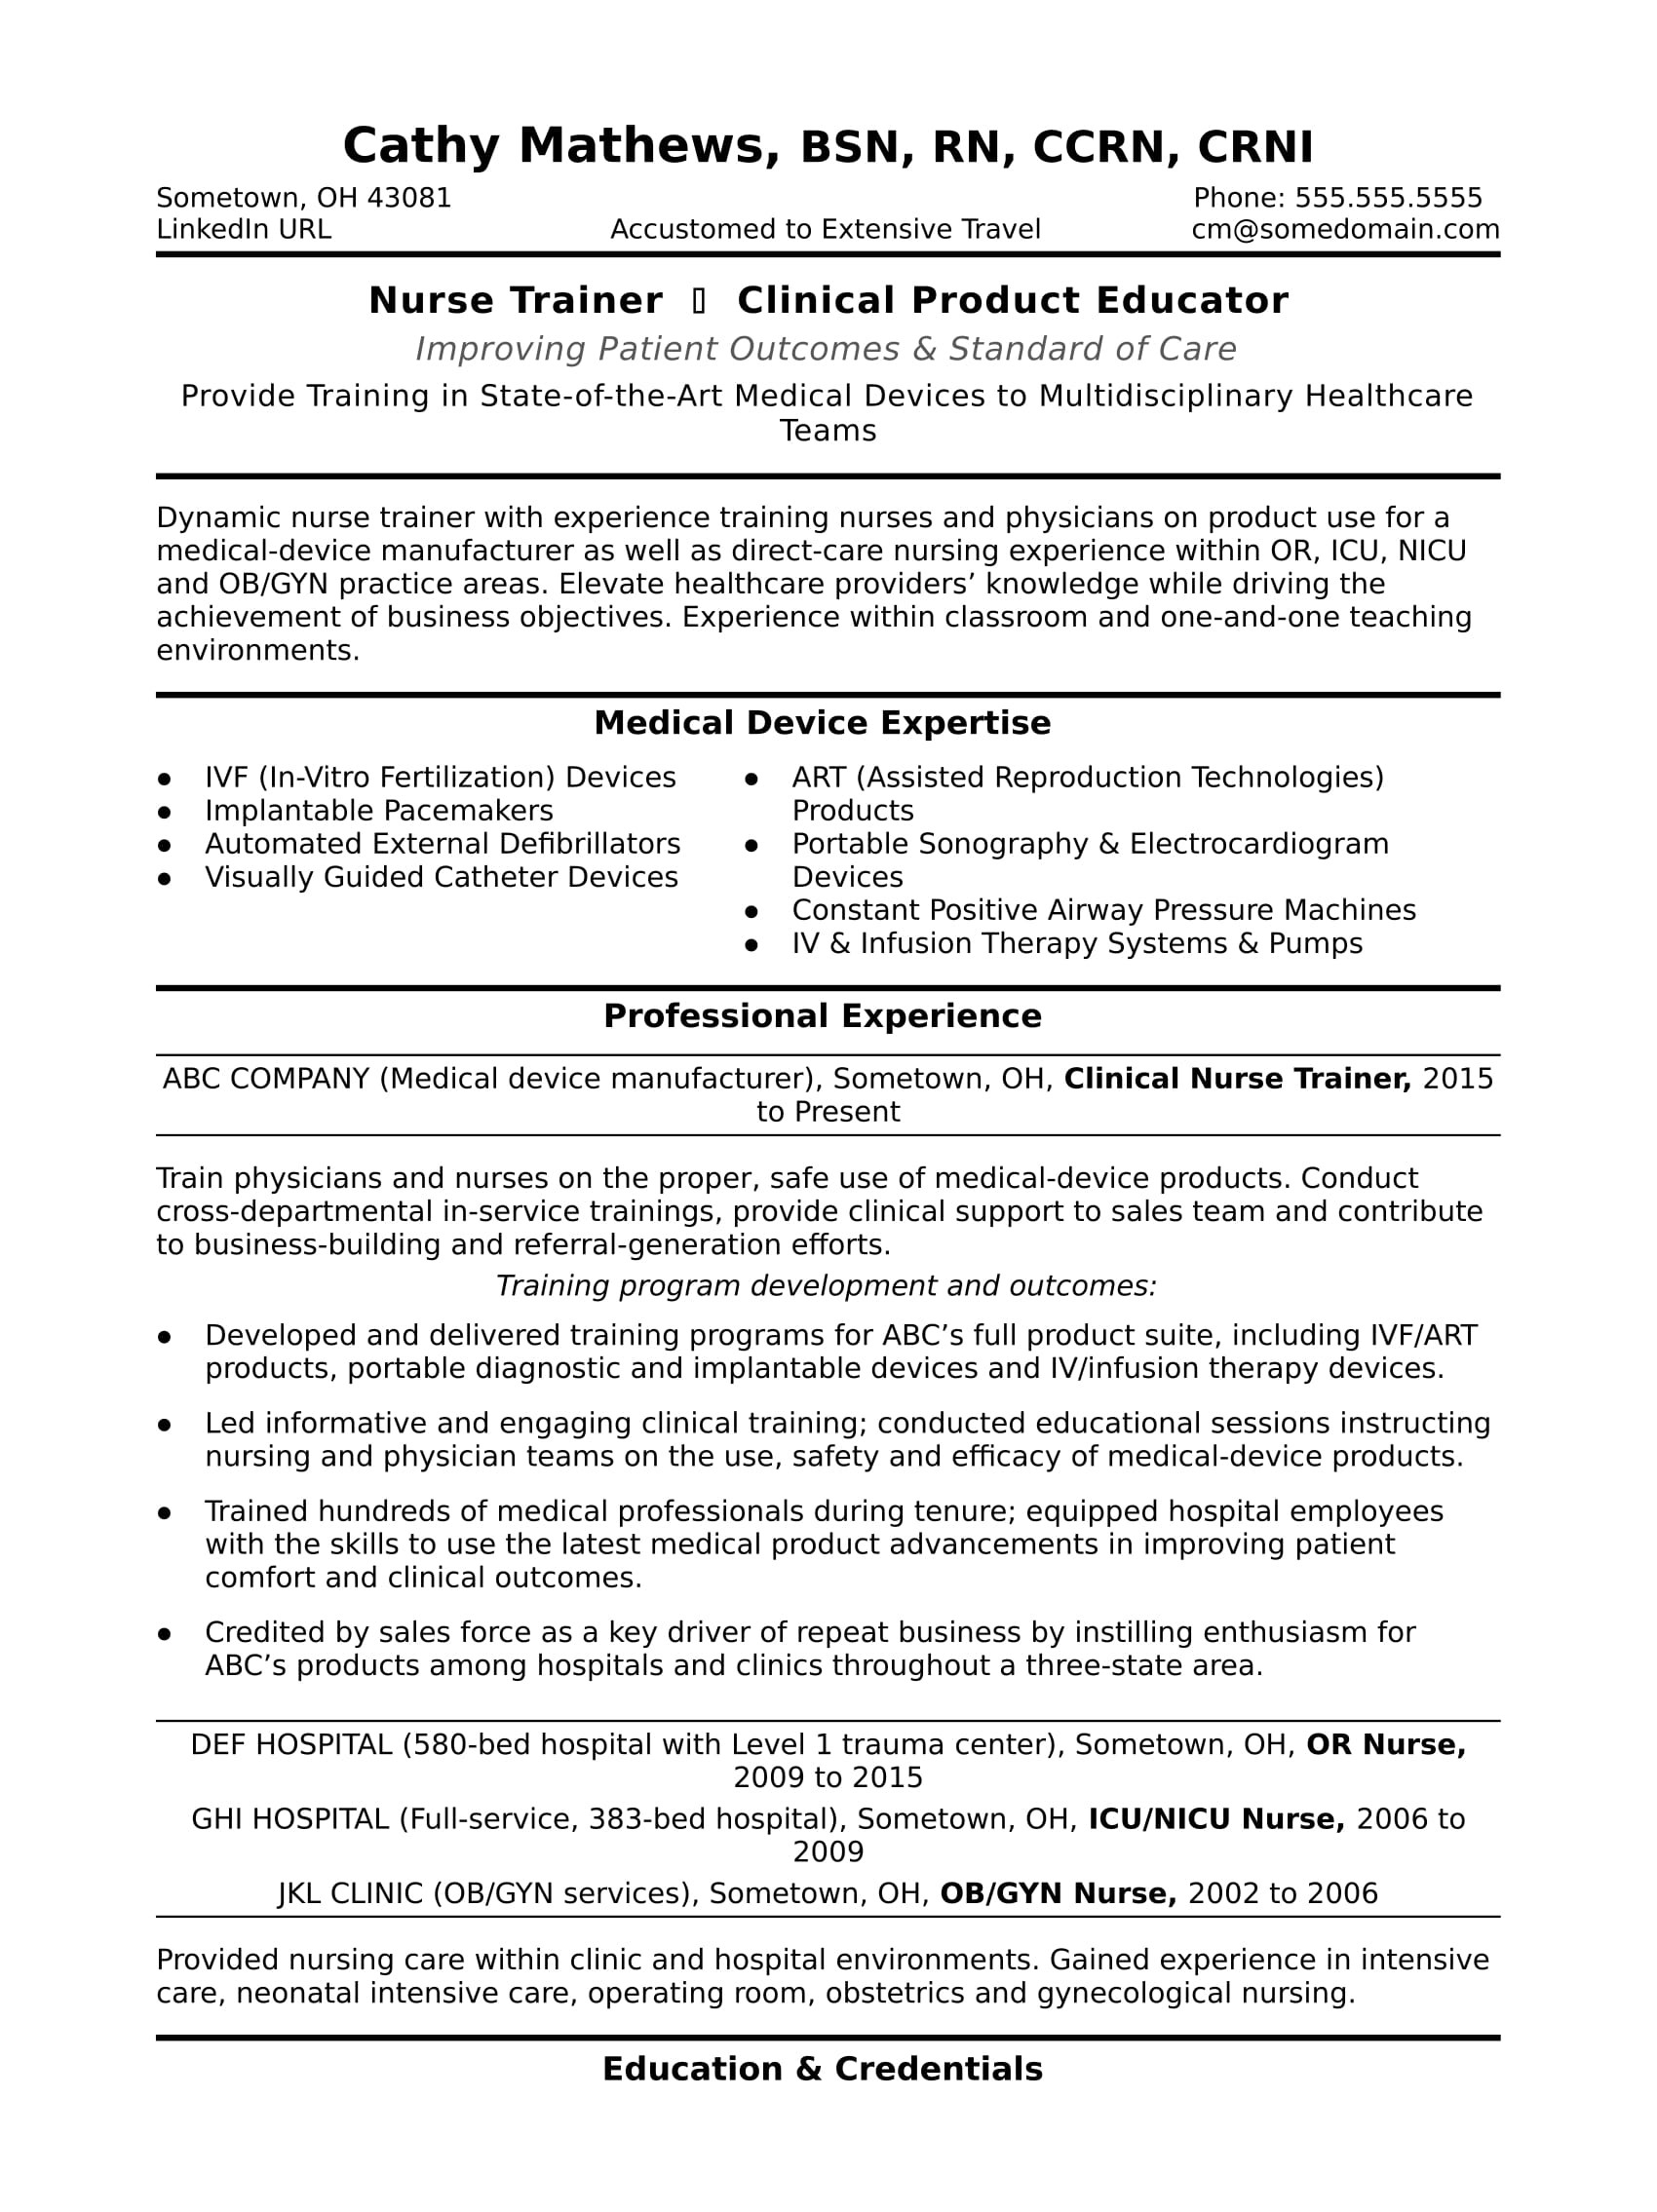 sample resume nurse trainer